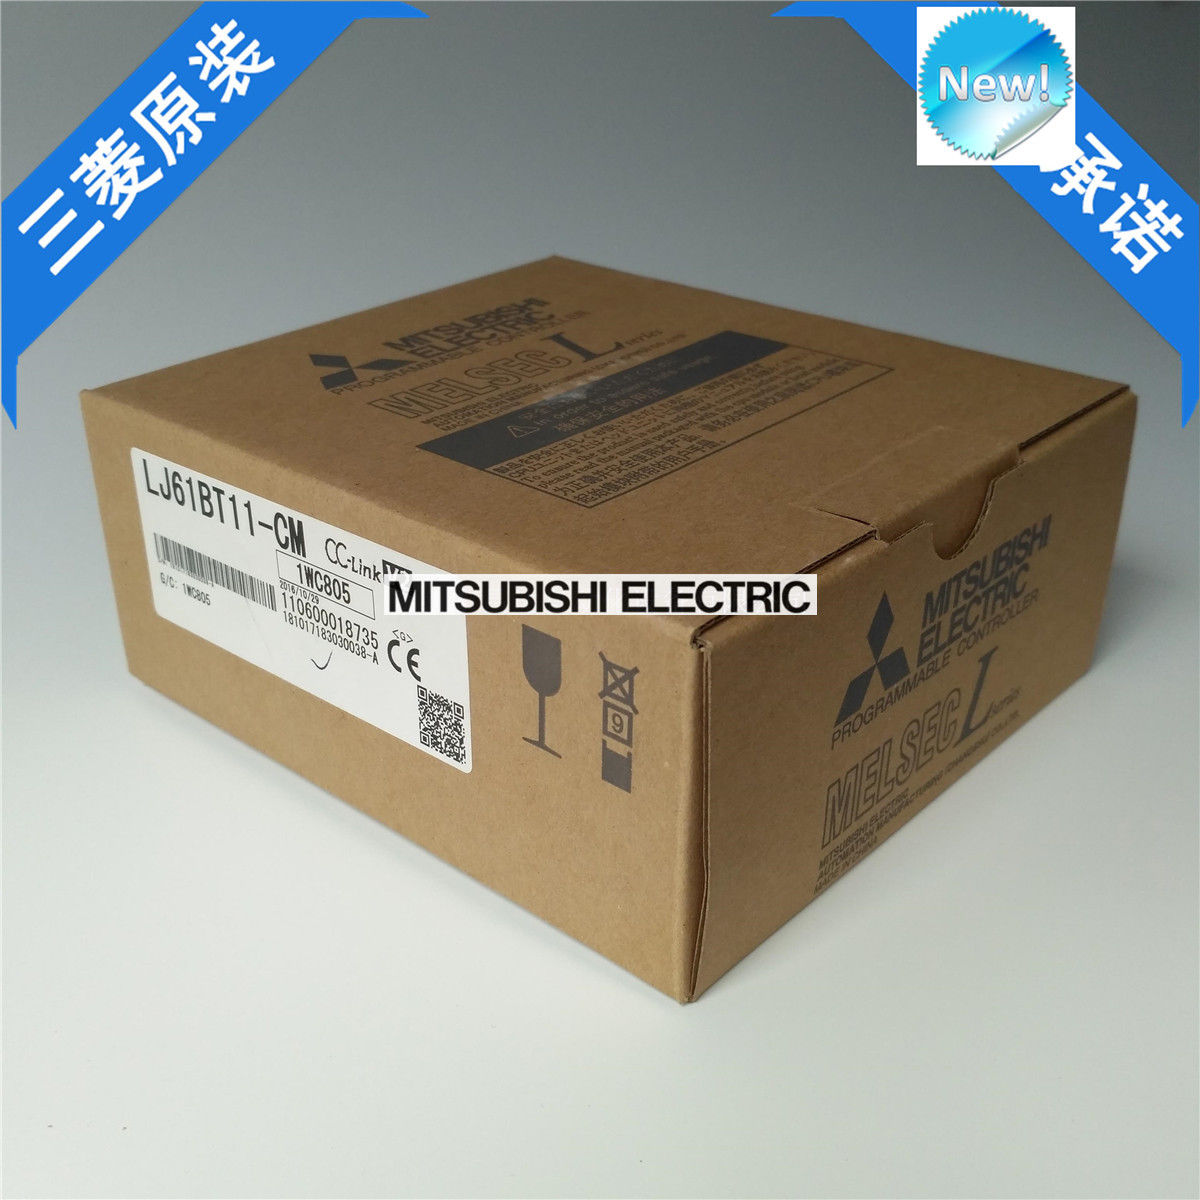 Brand New Mitsubishi PLC LJ61BT11-CM In Box LJ61BT11CM - zum Schließen ins Bild klicken